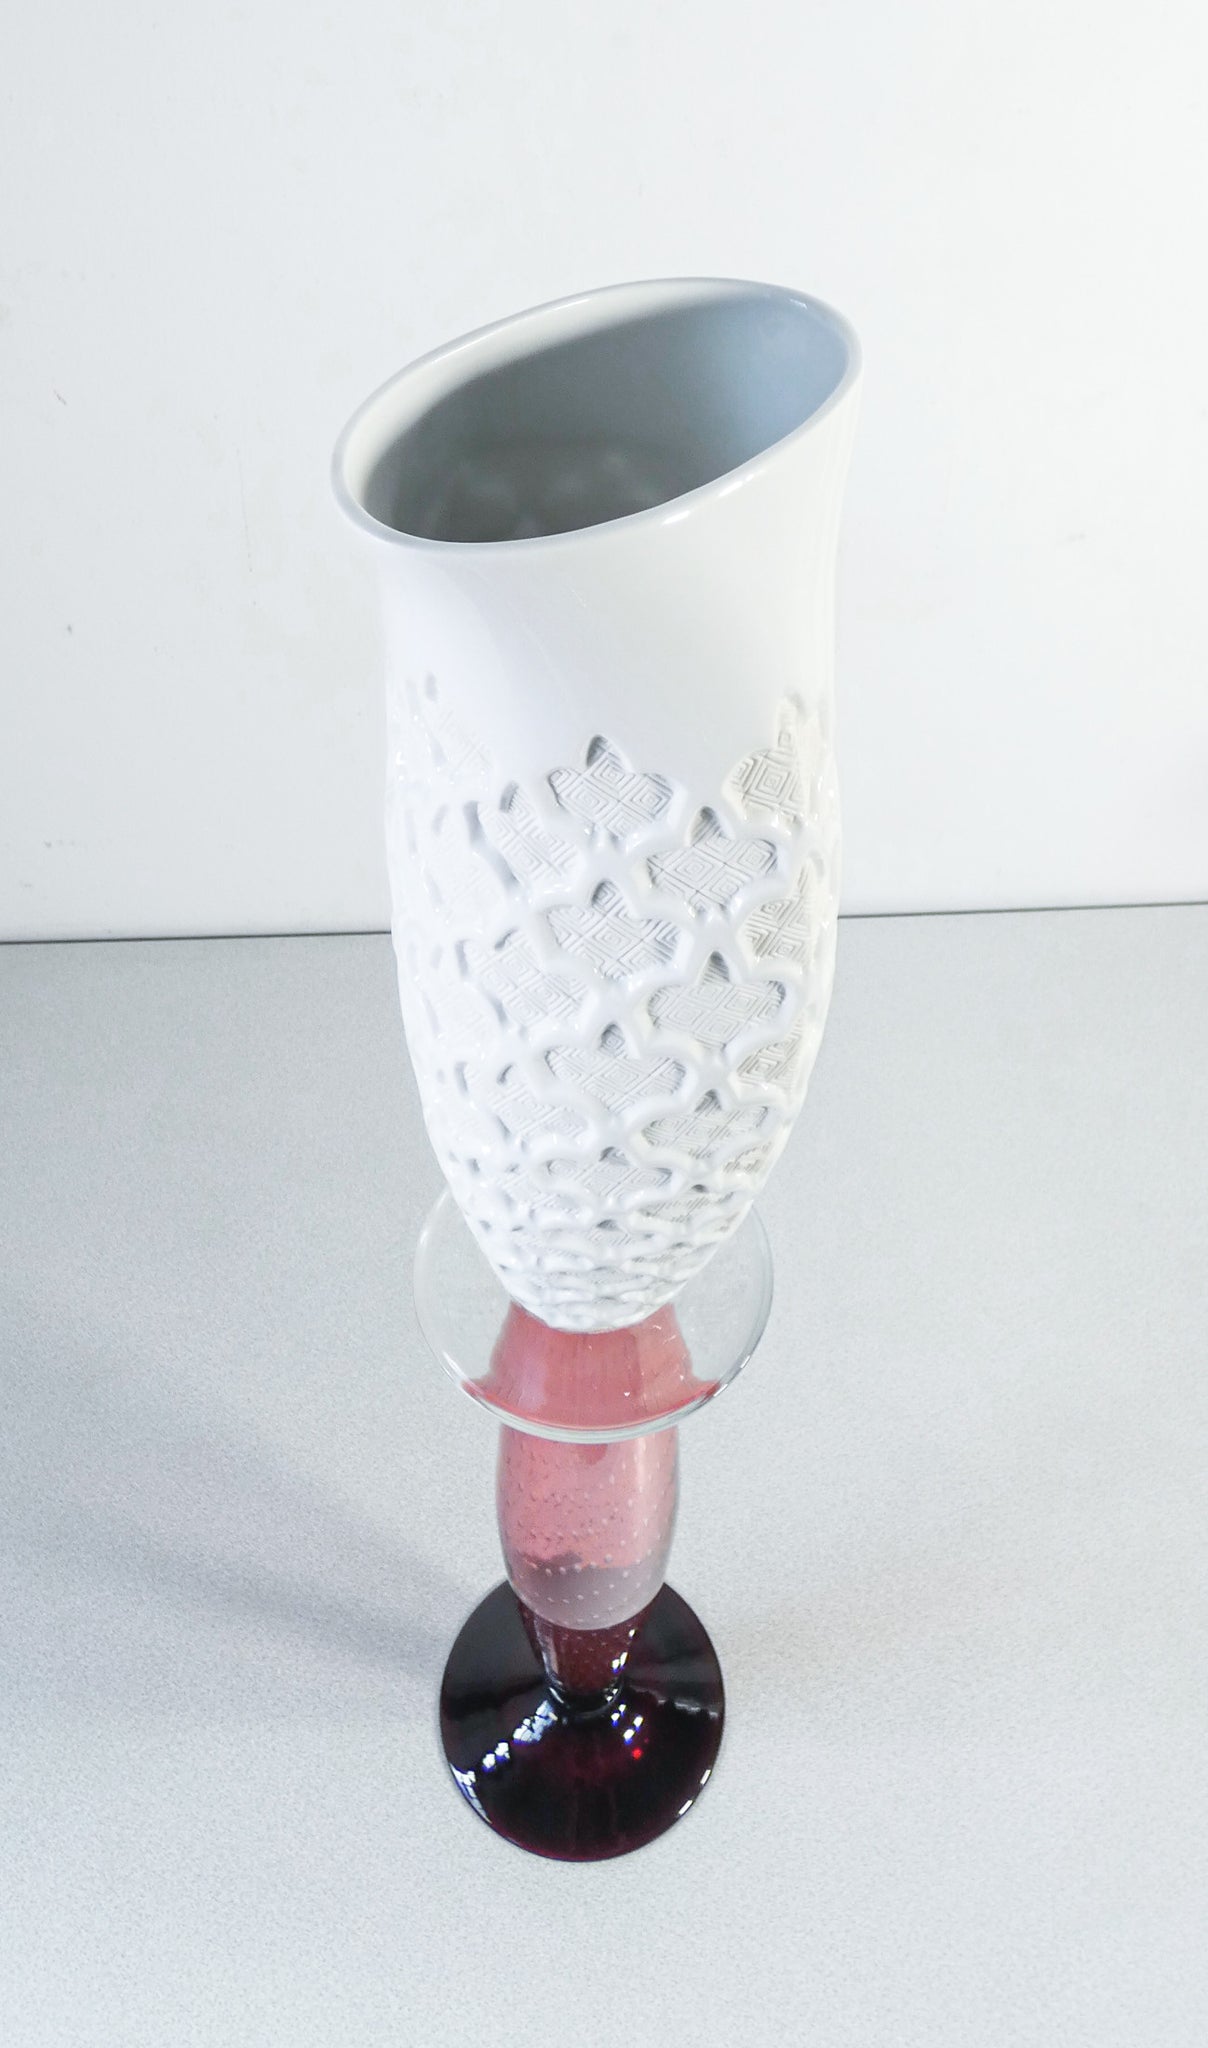 coppia vasi celine borek sipek per driade design vetro porcellana ceramica italy